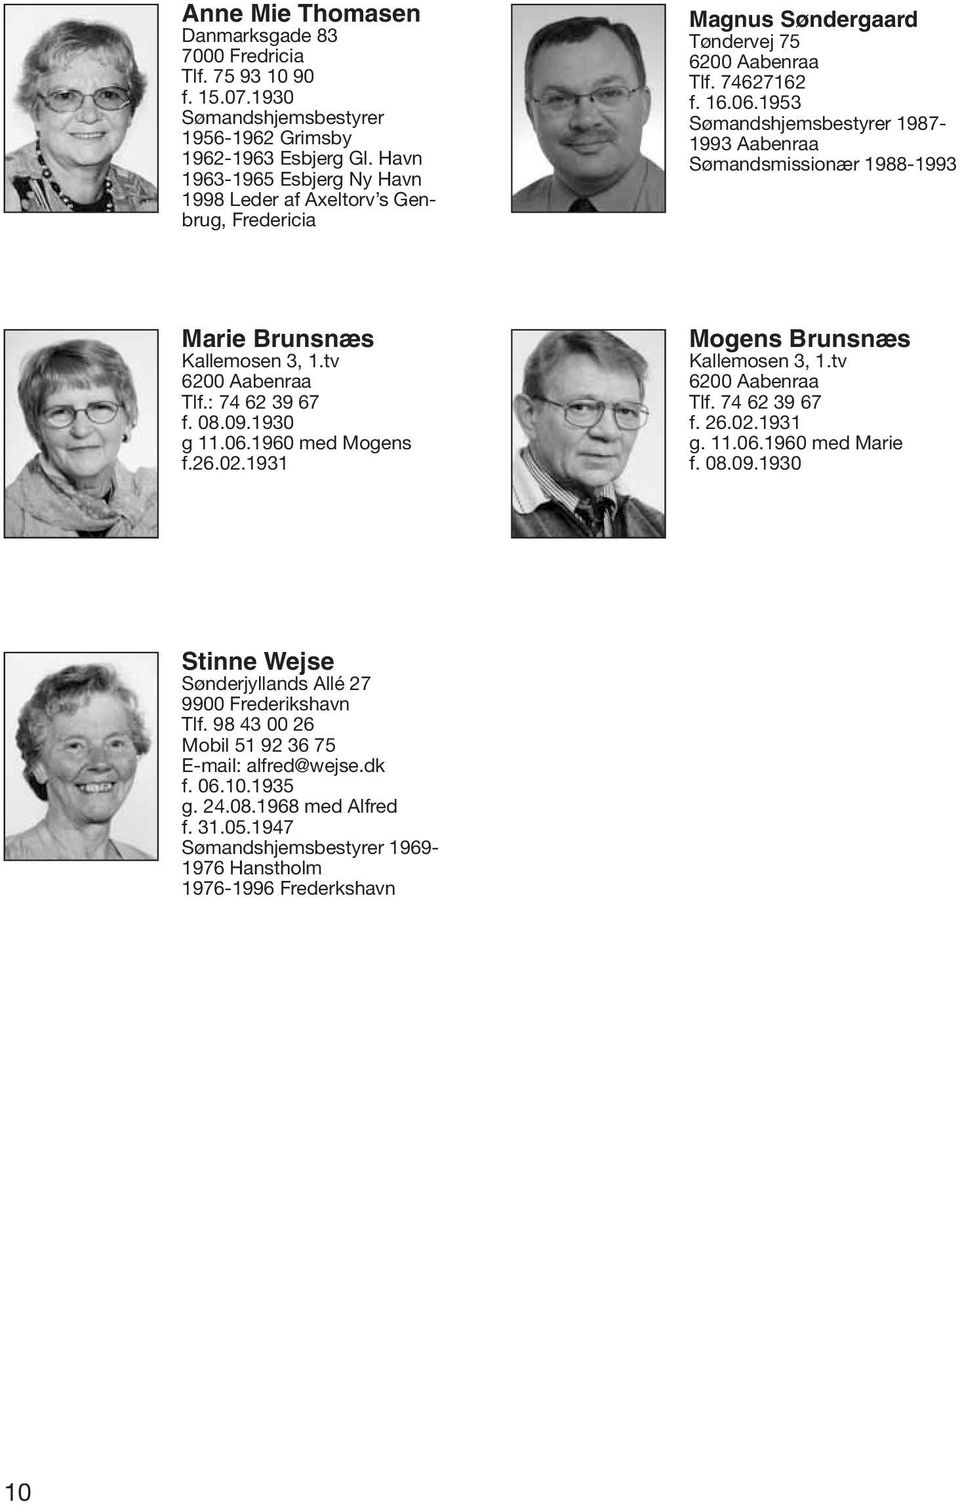 1953 Sømandshjemsbestyrer 1987-1993 Aabenraa Sømandsmissionær 1988-1993 Marie Brunsnæs Kallemosen 3, 1.tv 6200 Aabenraa Tlf.: 74 62 39 67 f. 08.09.1930 g 11.06.1960 med Mogens f.26.02.